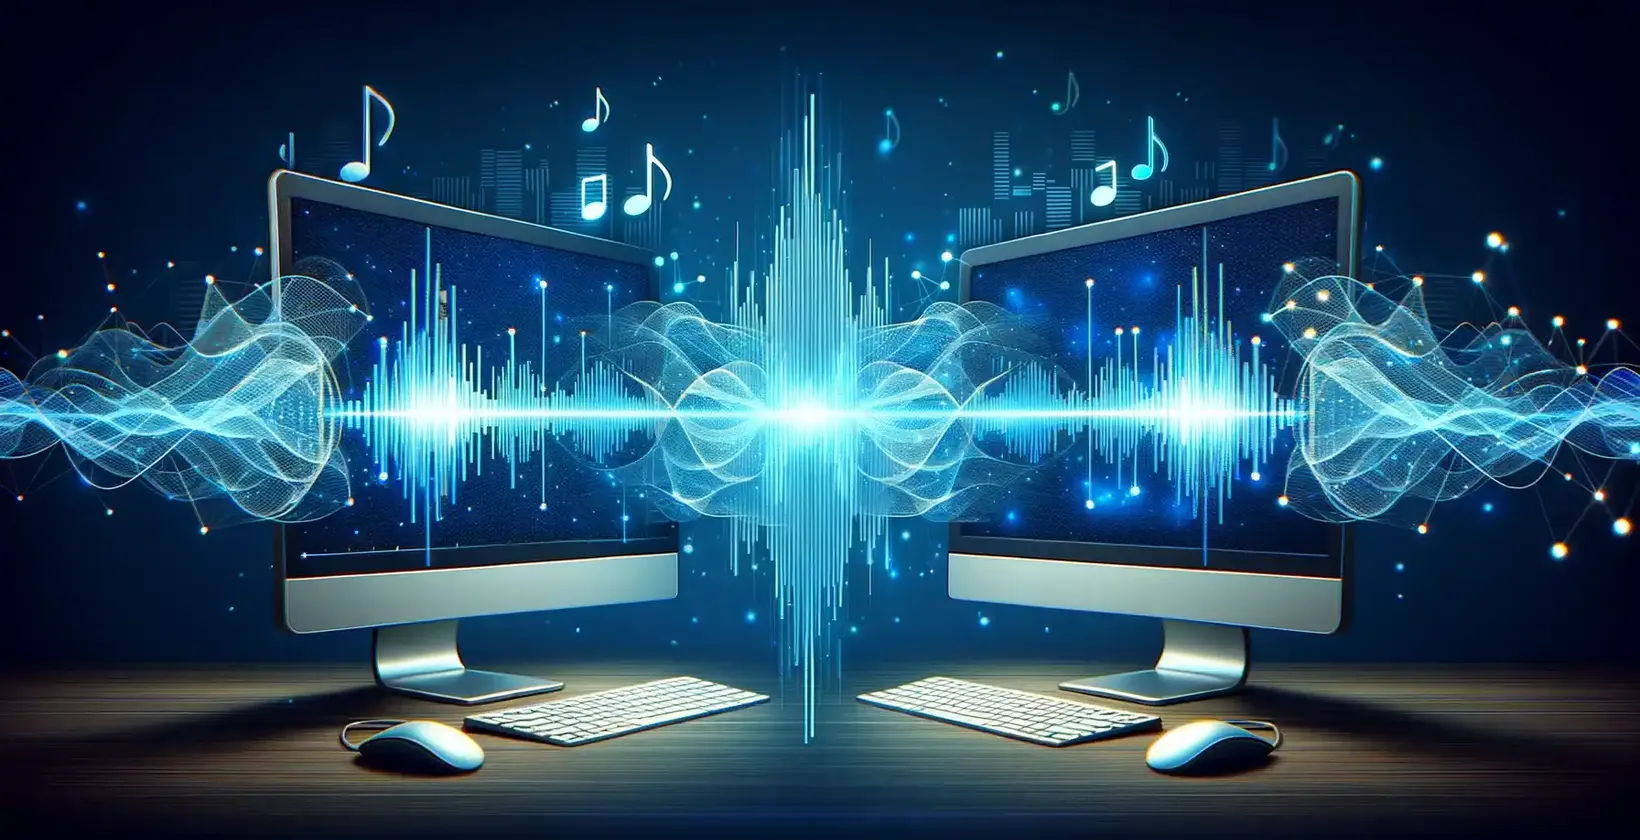 Два компјутерски екрани кои покажуваат музички ноти и звучни бранови, илустрирајќи аудио визуелизација.